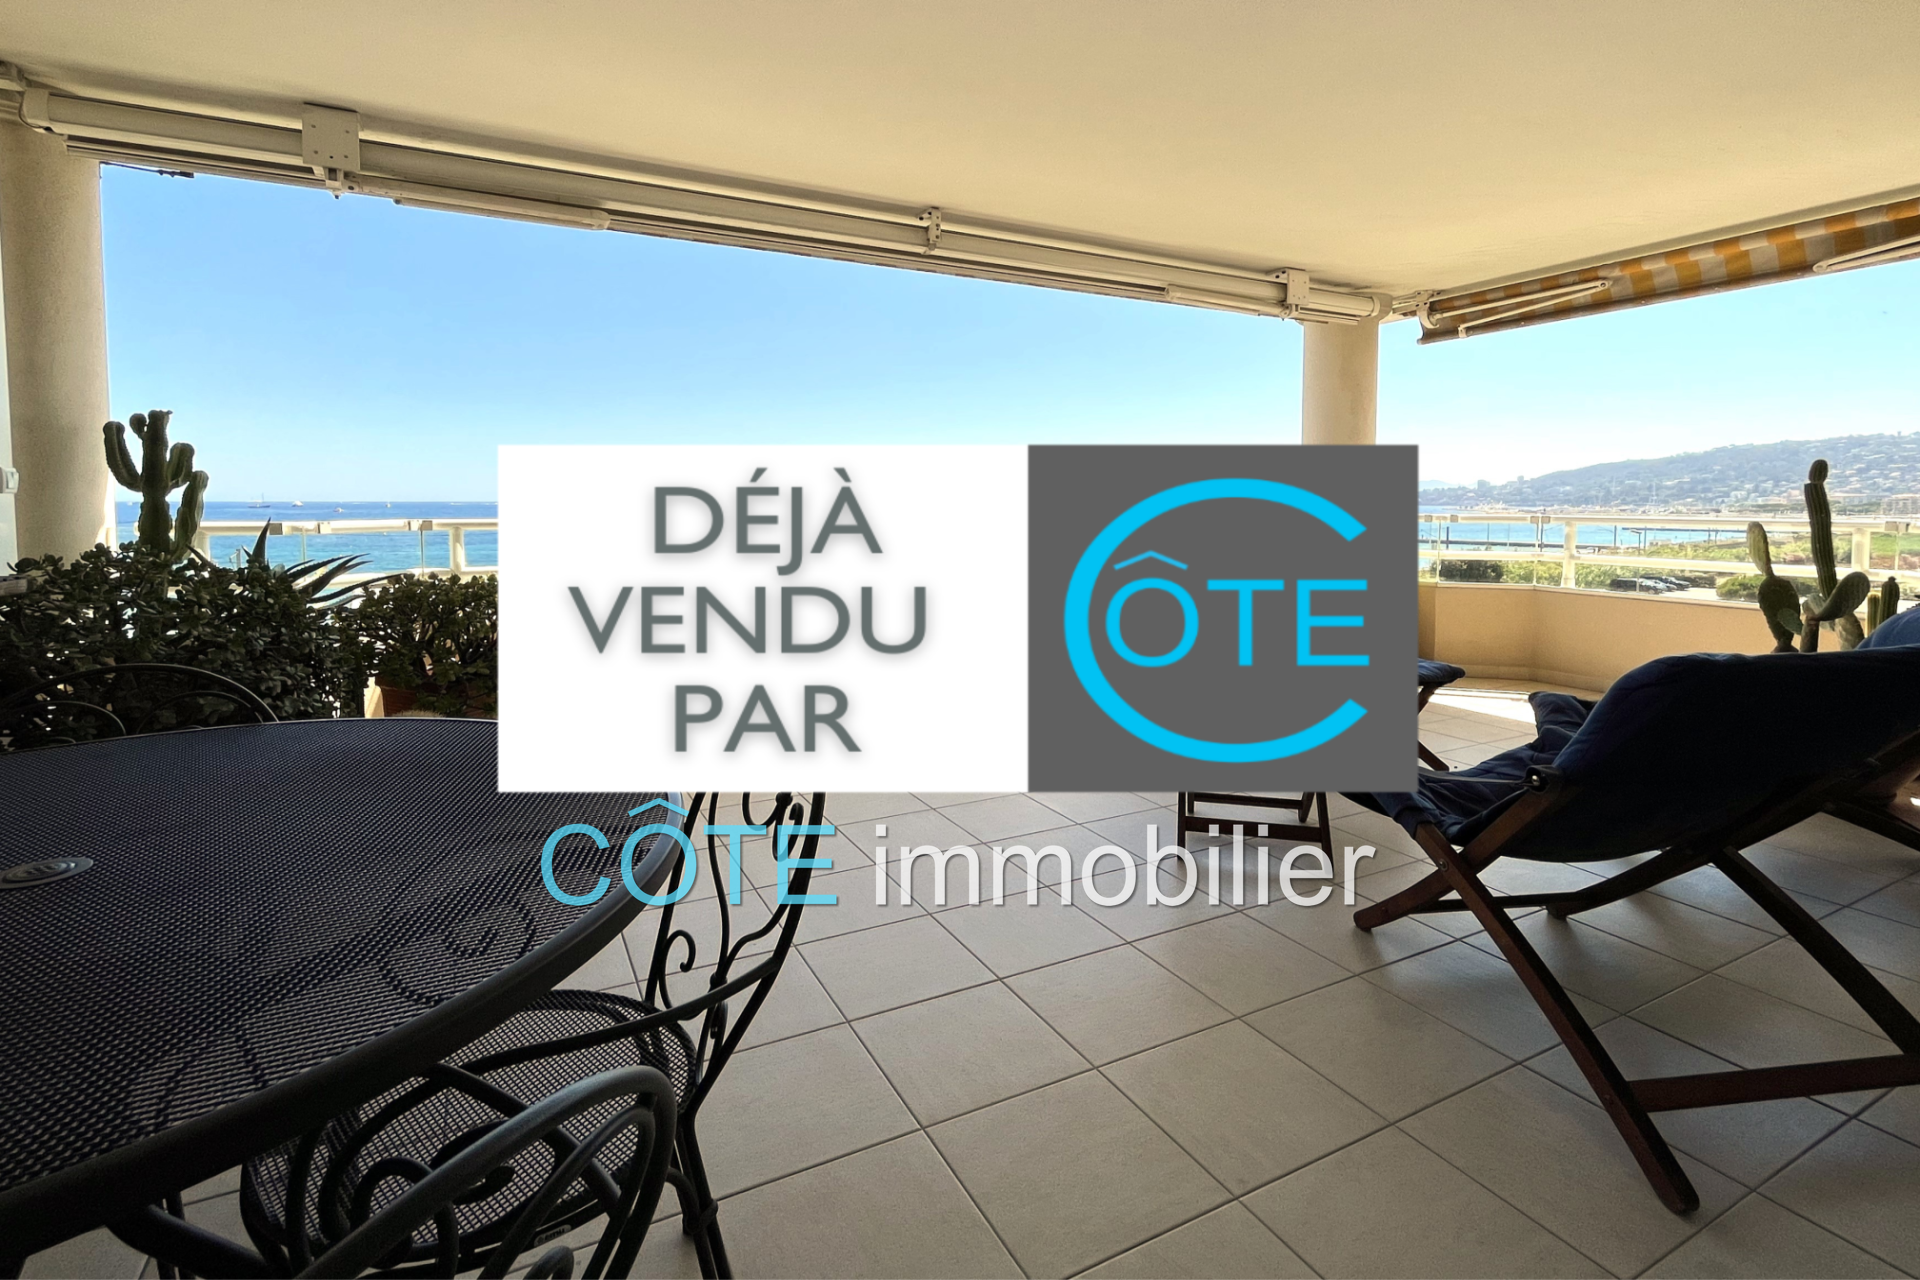 Vente Appartement 82m² à Juan les Pins (06160) - Côte Immobilier